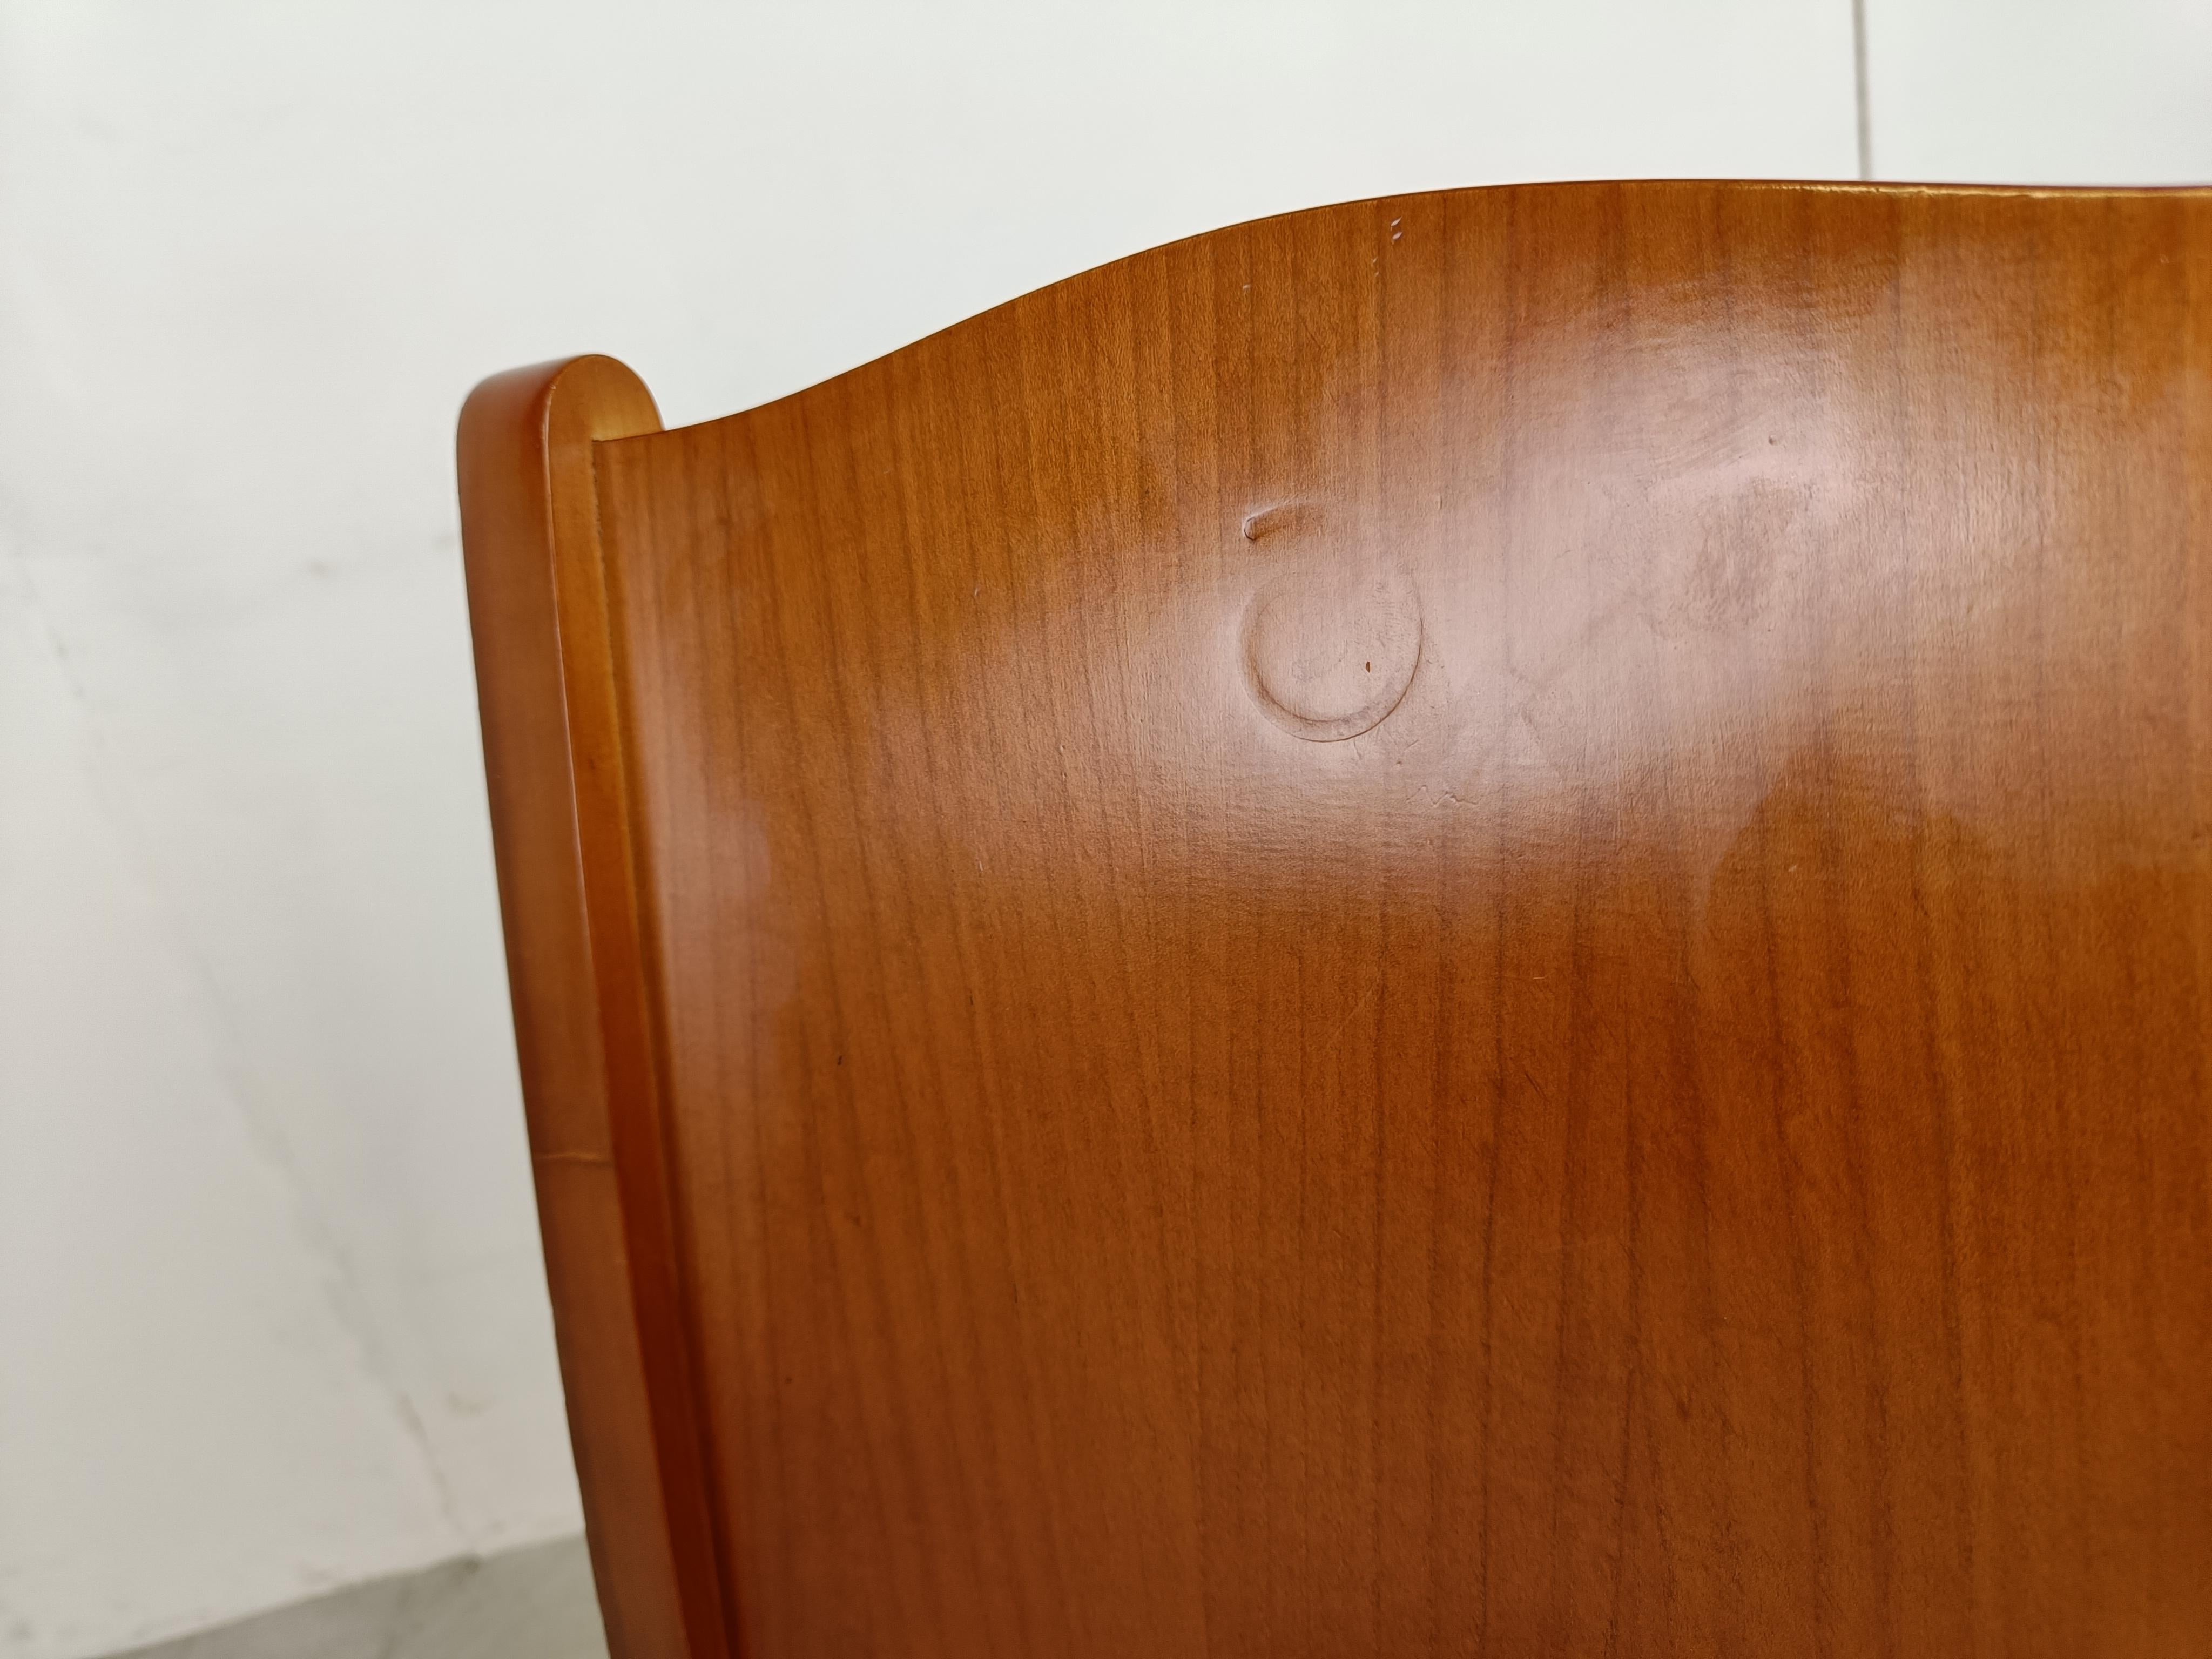 Ensemble de 4 chaises de salle à manger d'un modèle très rare 'placide de bois' conçu par le célèbre designer Philippe Starck pour Driade.

Ces chaises se distinguent par la beauté de leurs pieds à l'avant et par l'élégance de leur piétement.